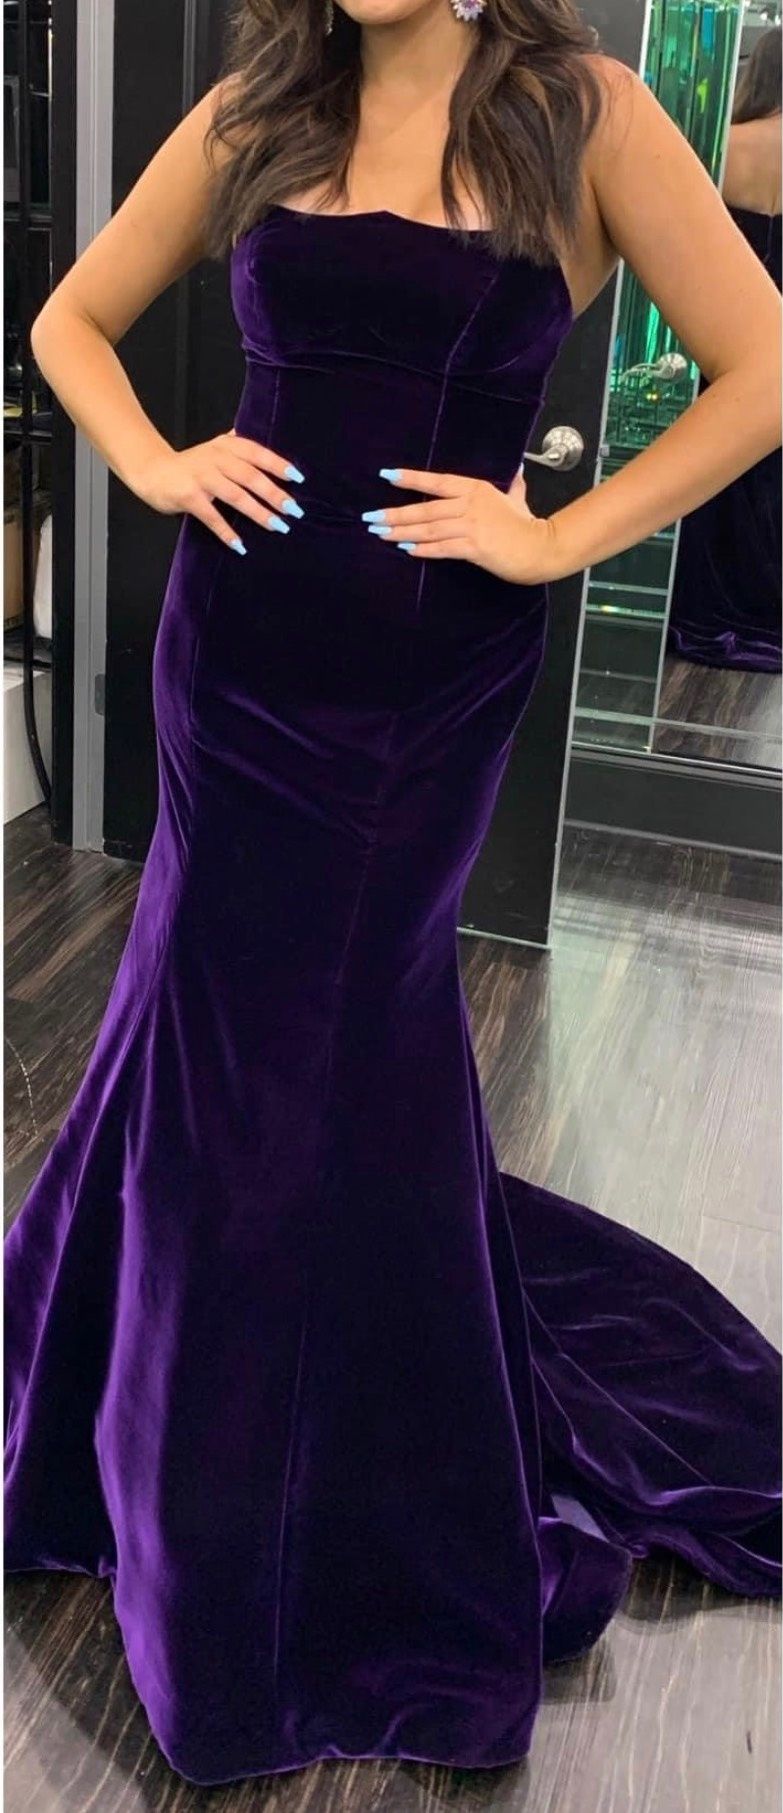 LOMBARD Handmade Long Cocktail Dress in Purple Velvet. - Etsy